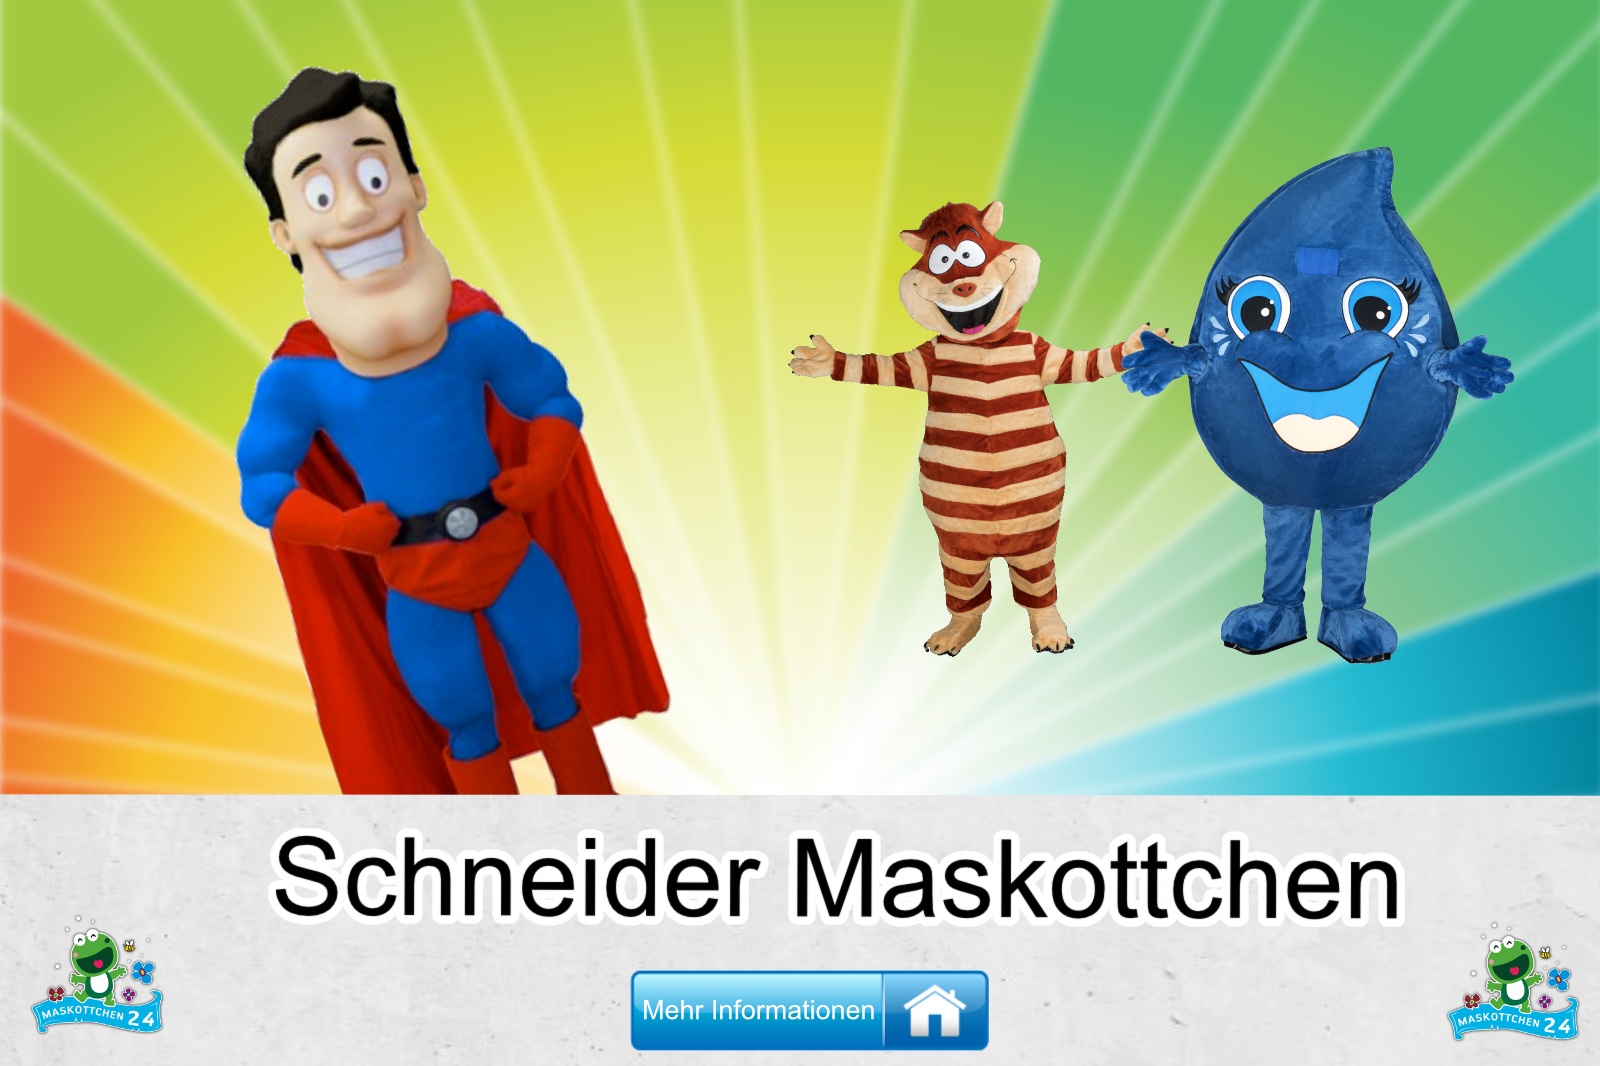 Der Schneider Maskottchen Kostüm kaufen, günstige Produktion und Herstellung.